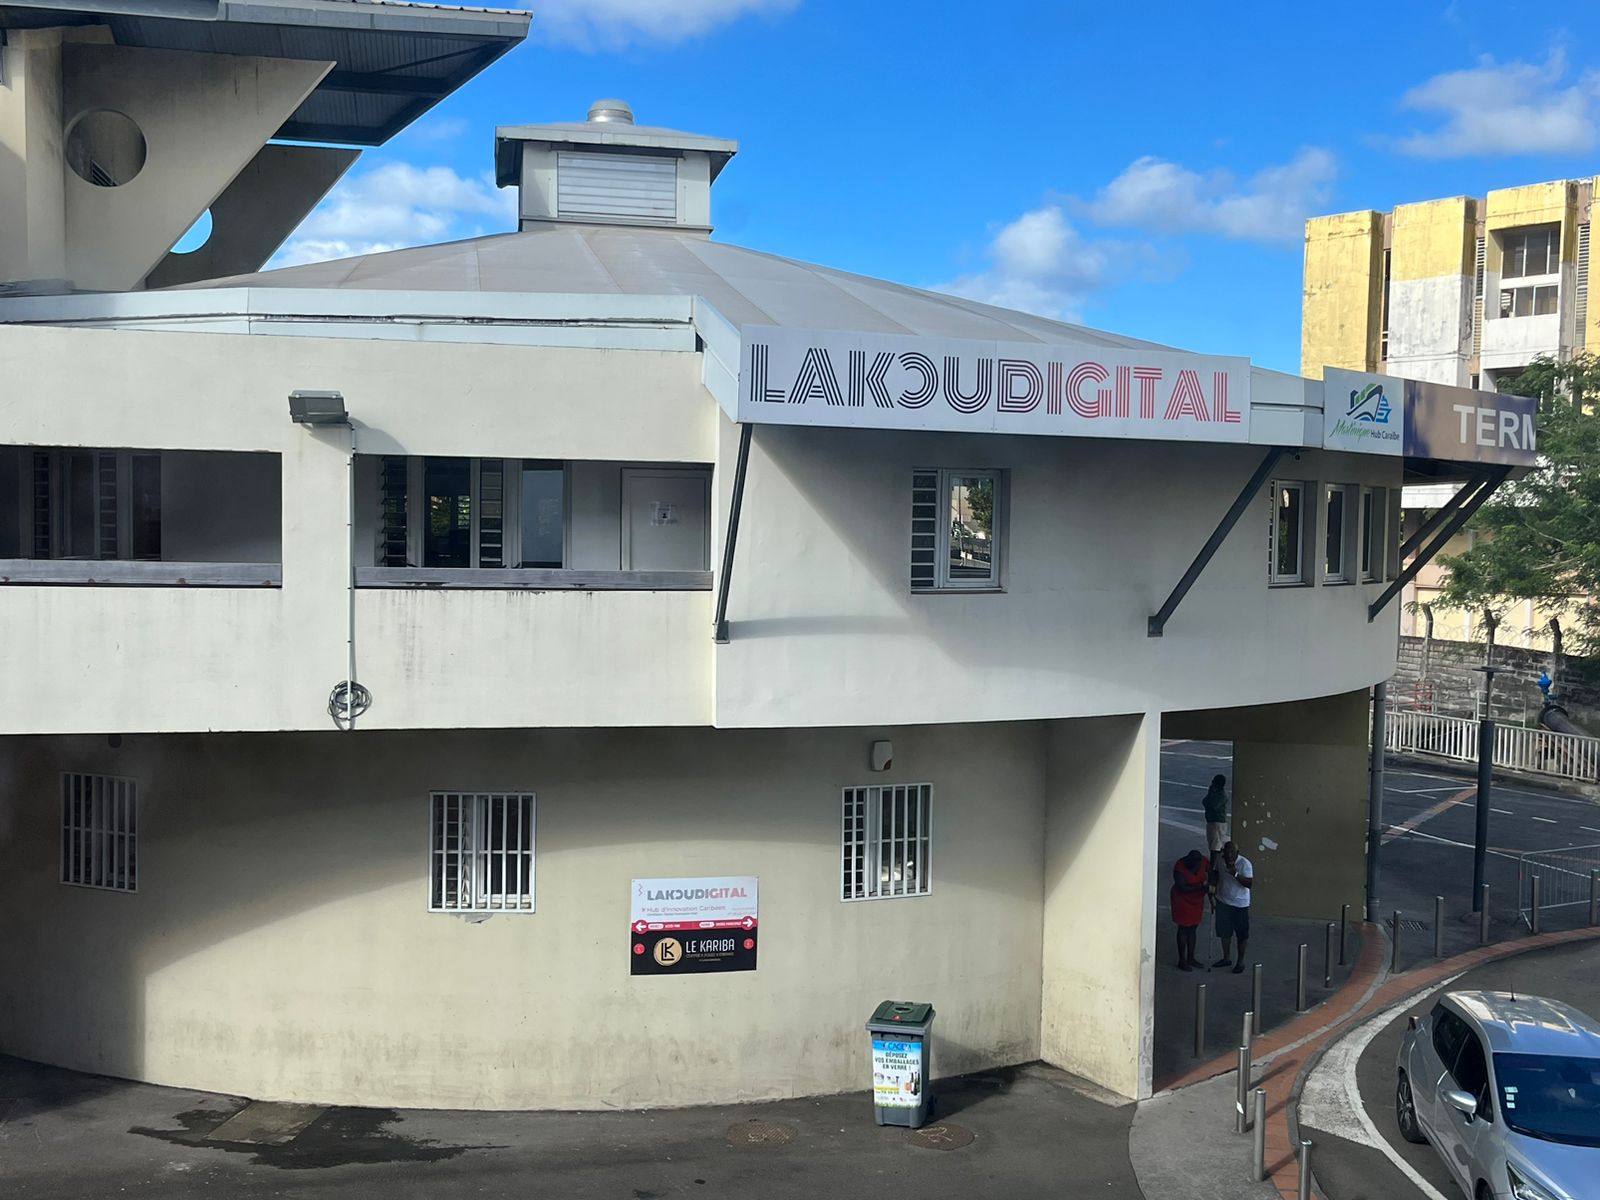     Lakoudigital : « le Grand Port de Martinique veut nous condamner à mort »

